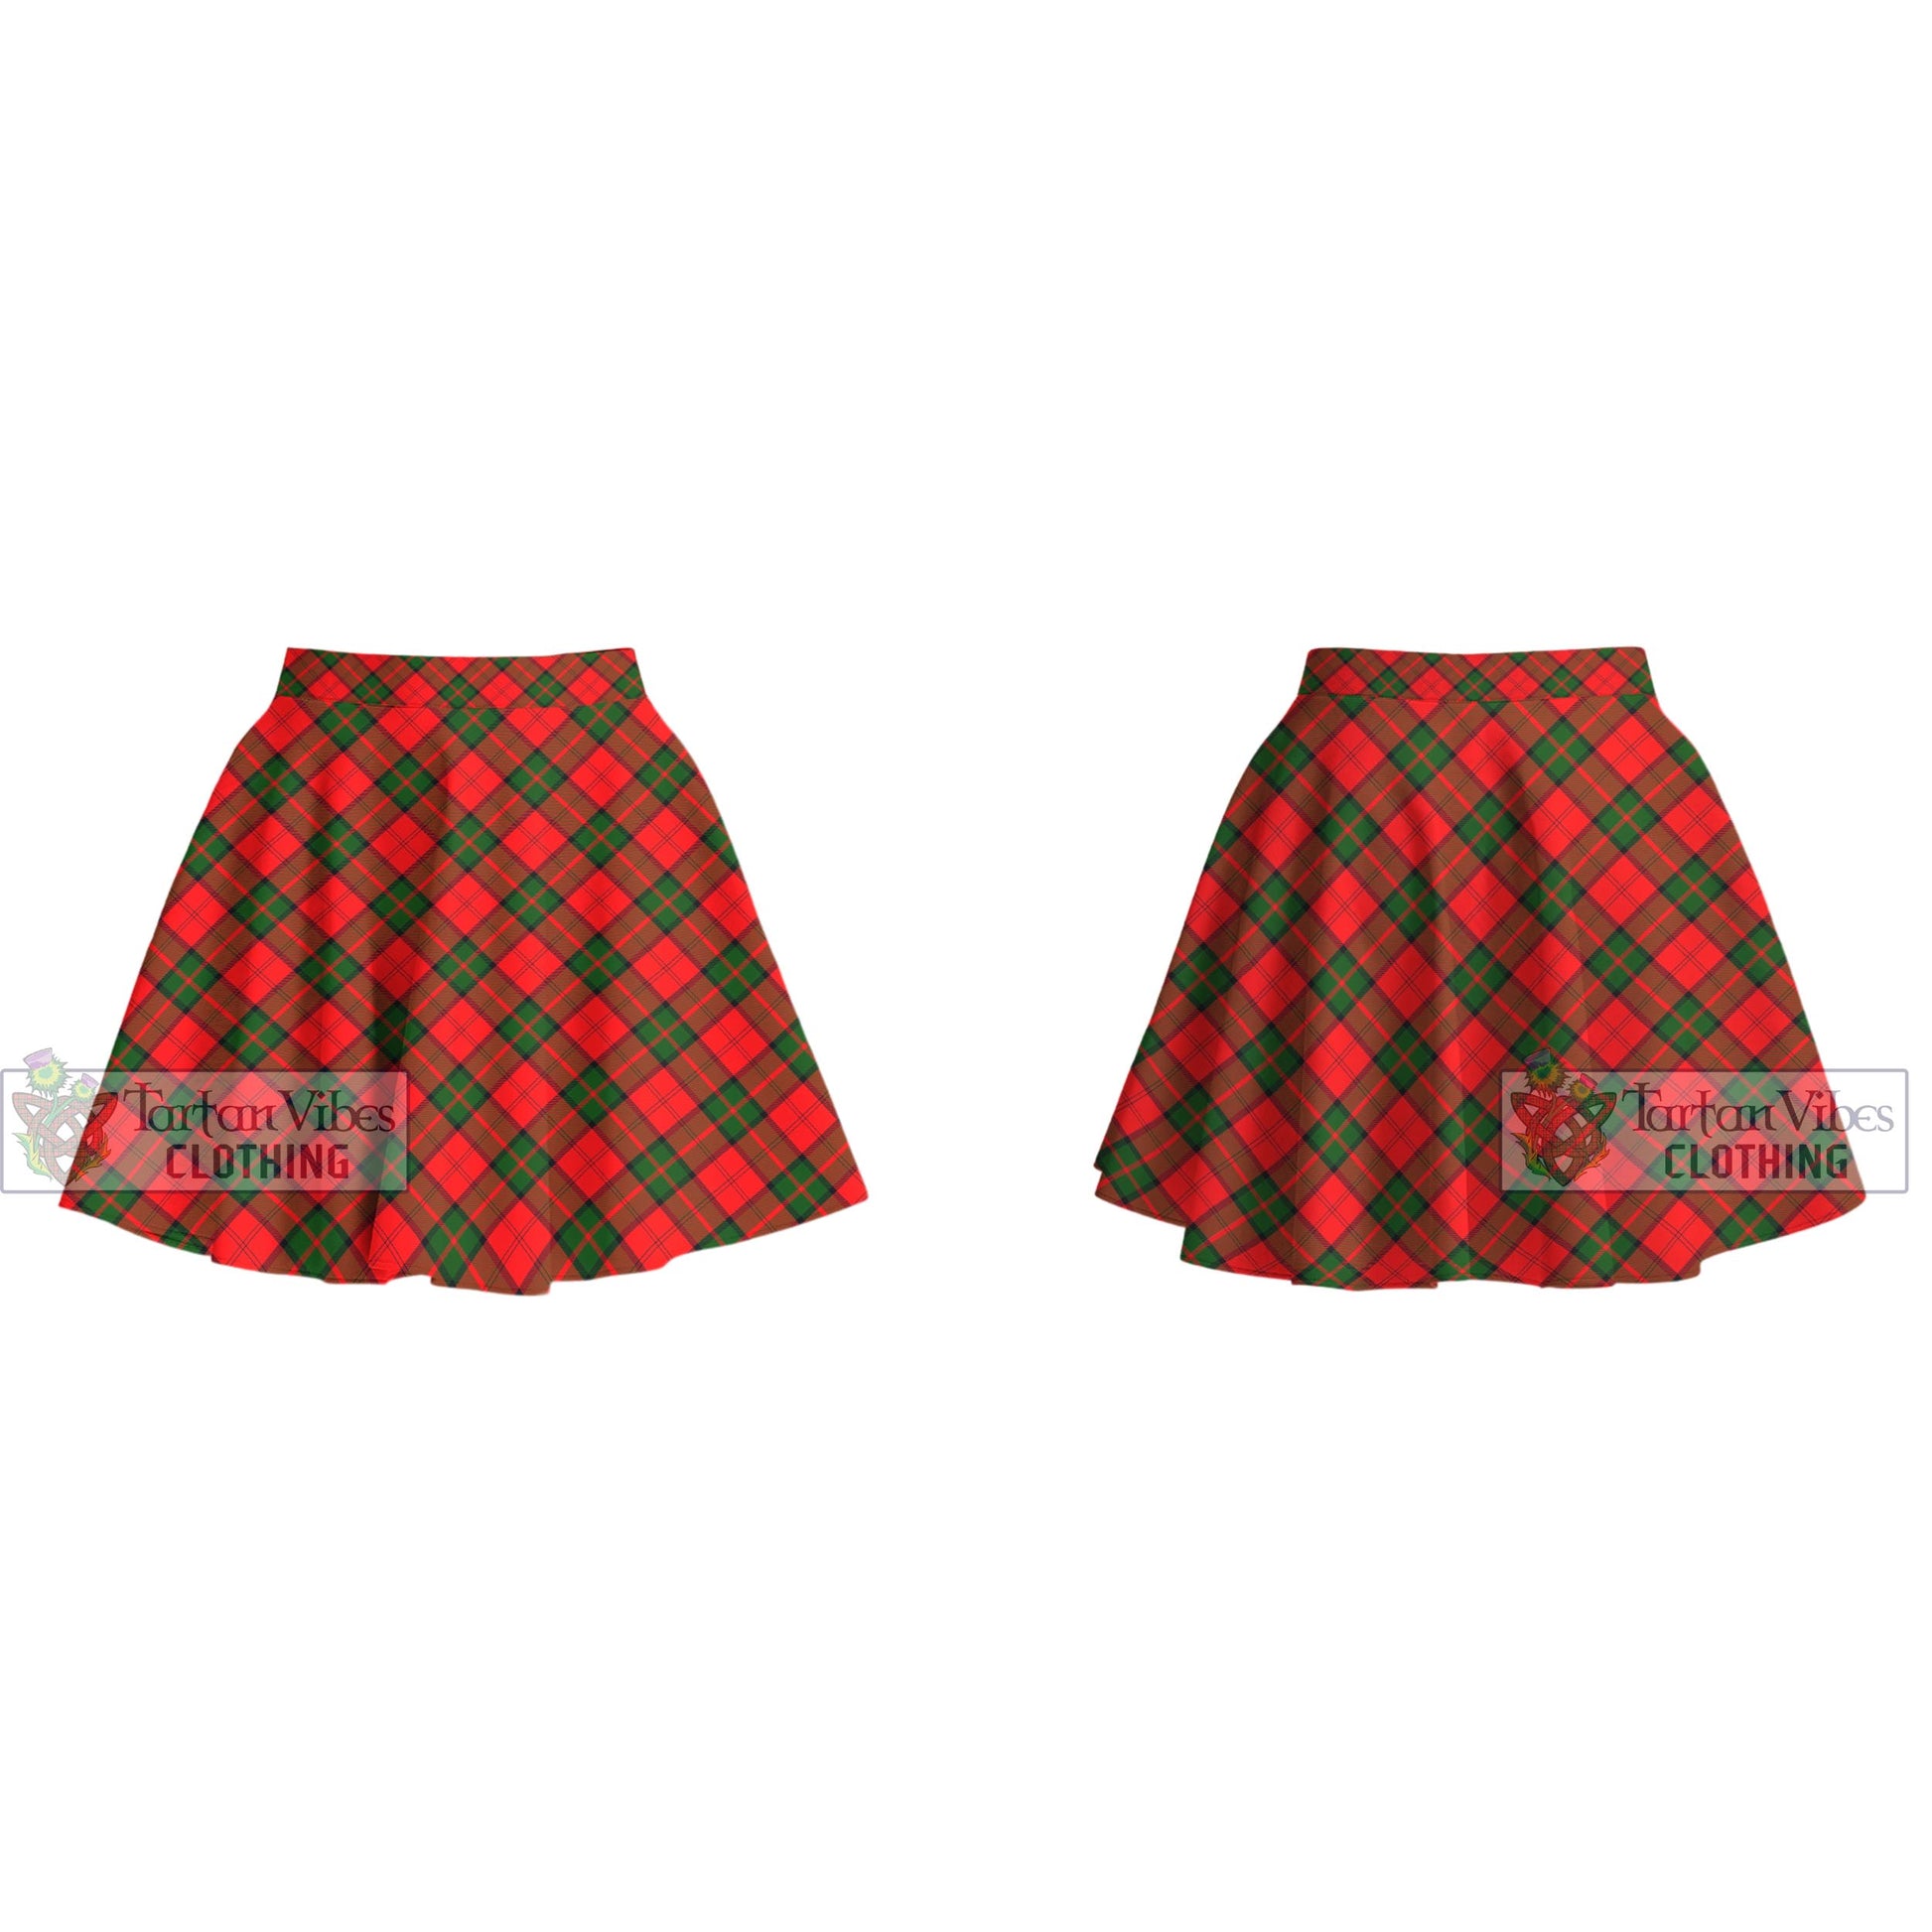 Tartan Vibes Clothing Dunbar Modern Tartan Women's Plated Mini Skirt